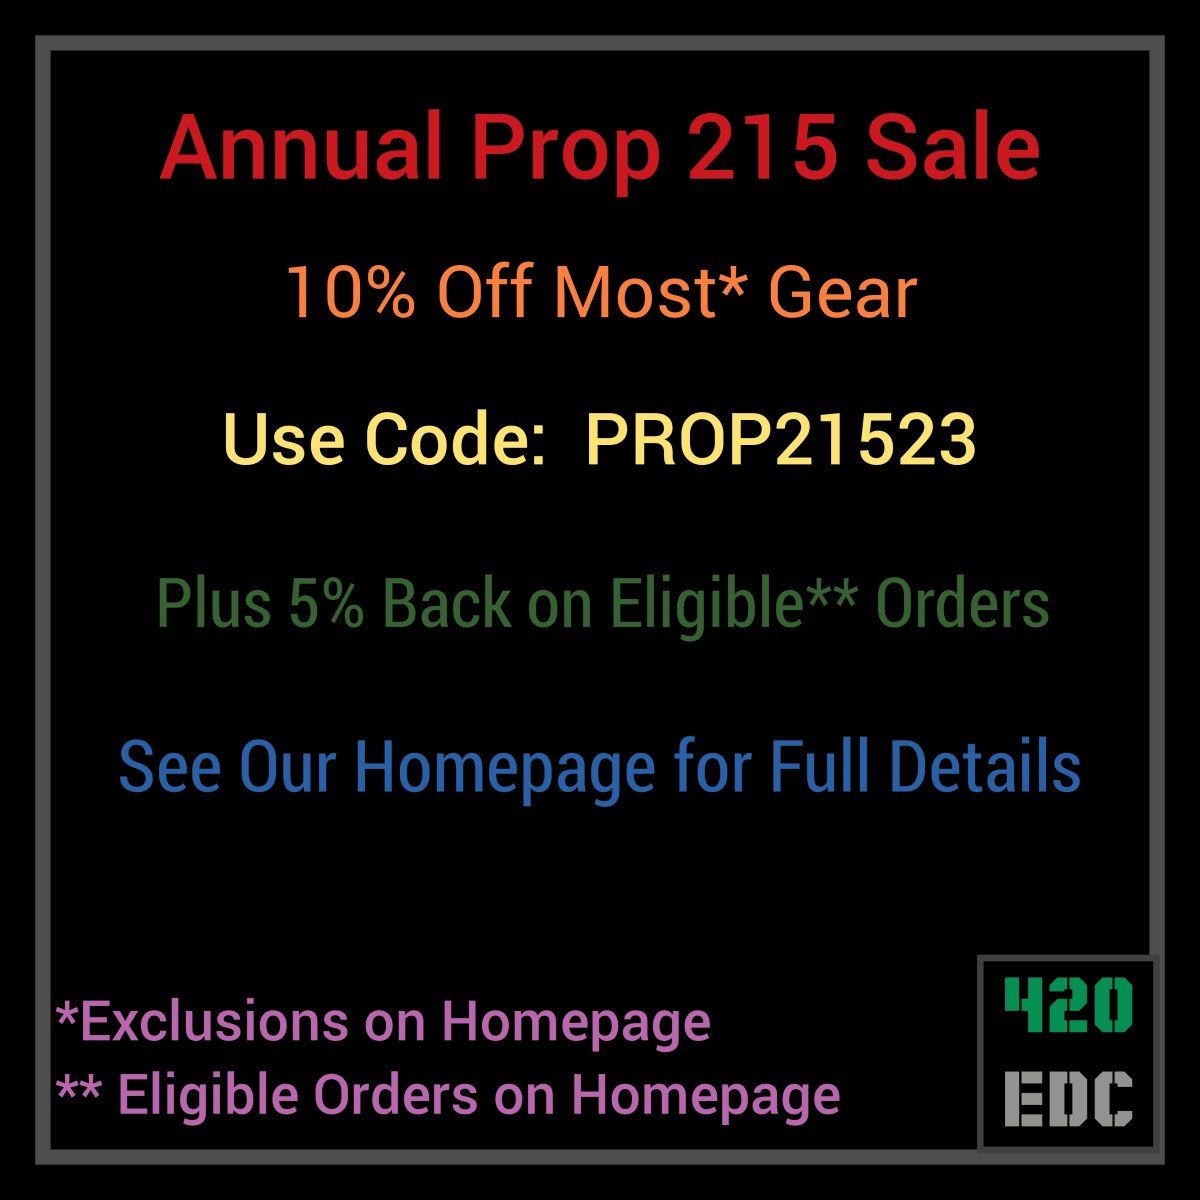 Prop-215-2023-Sale-420EDC.jpg